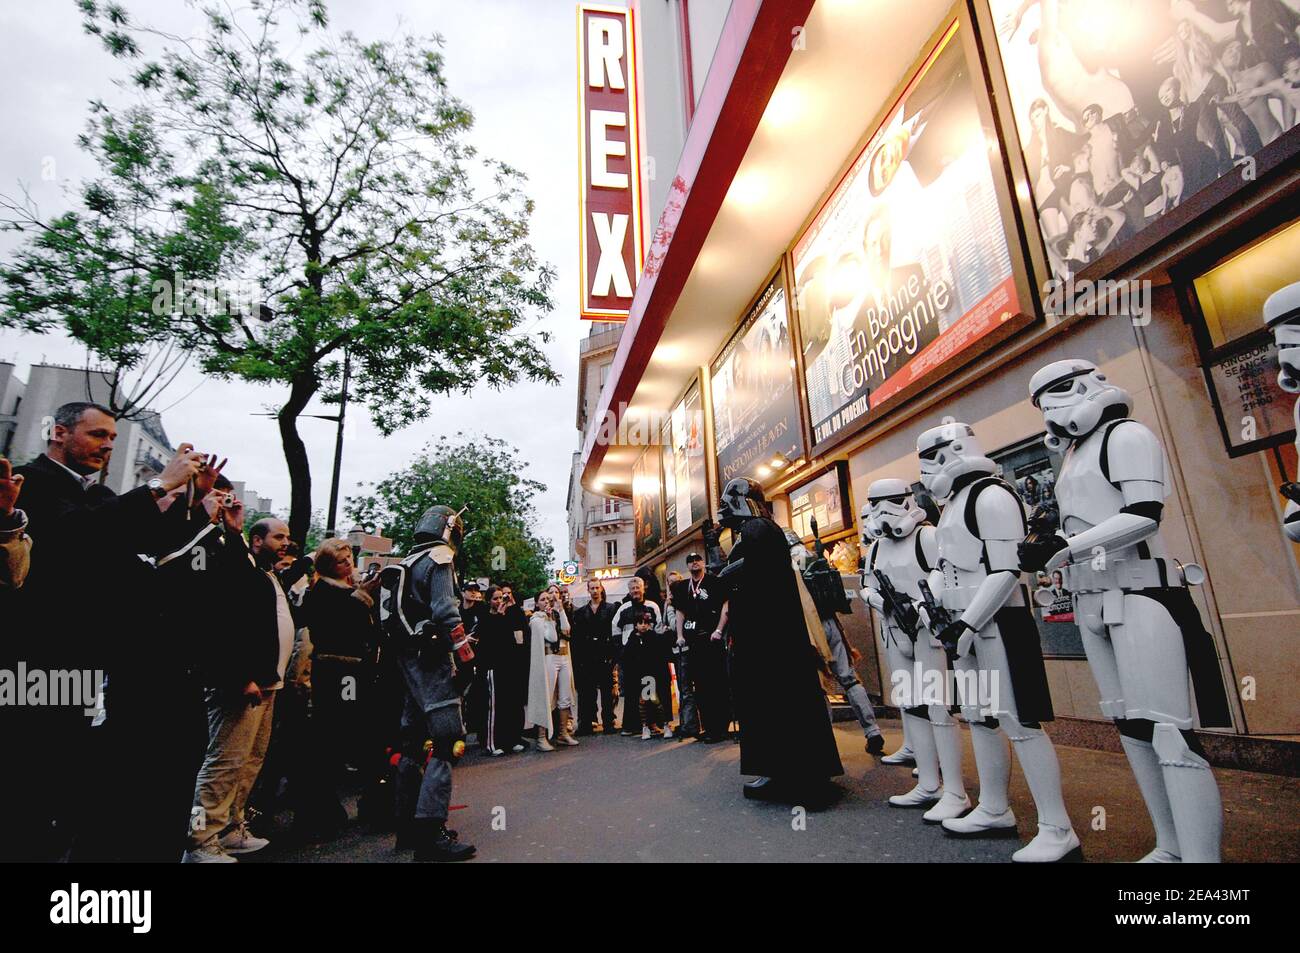 Fans von 'Star Wars' besuchen die französische Premiere von 'Star Wars Episode III: Revenge of the Sith' im Grand Rex in Paris, Frankreich, am 17. Mai 2005. Foto von Giancarlo Gorassini/ABACA. Stockfoto